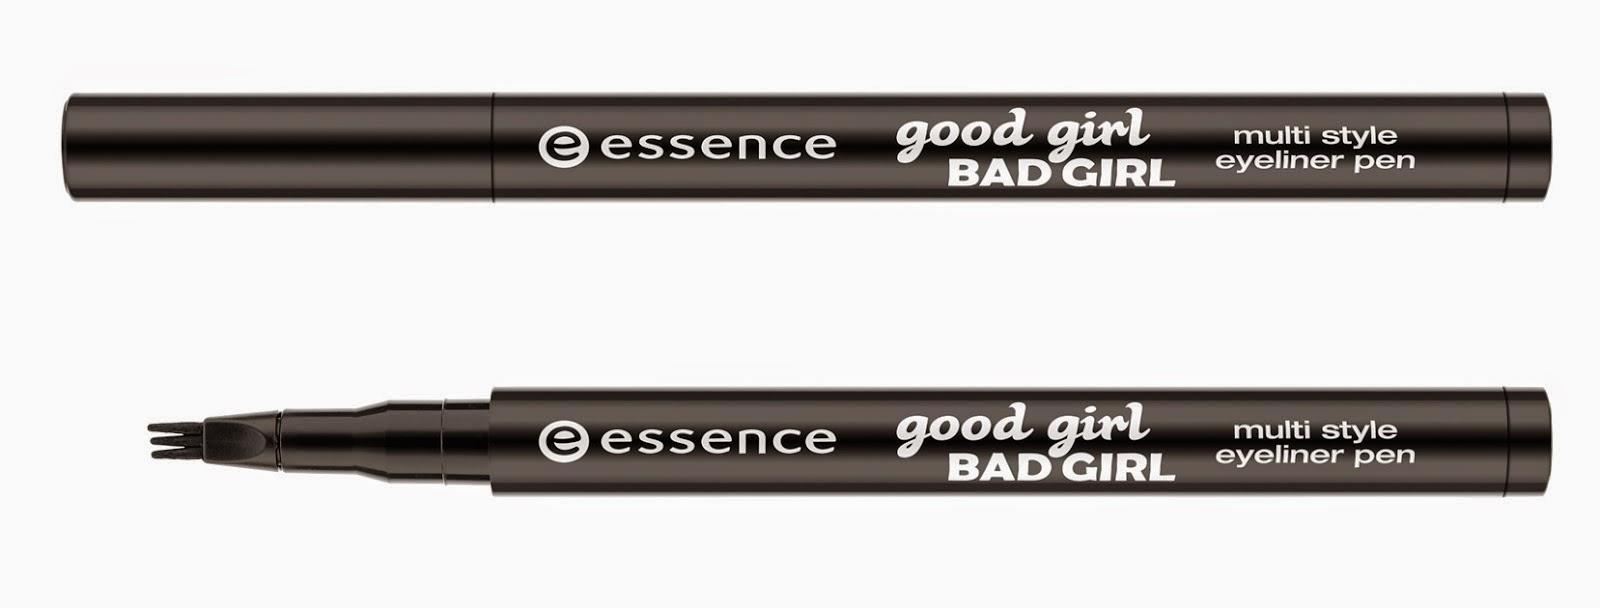 Essence good girl bad girl 